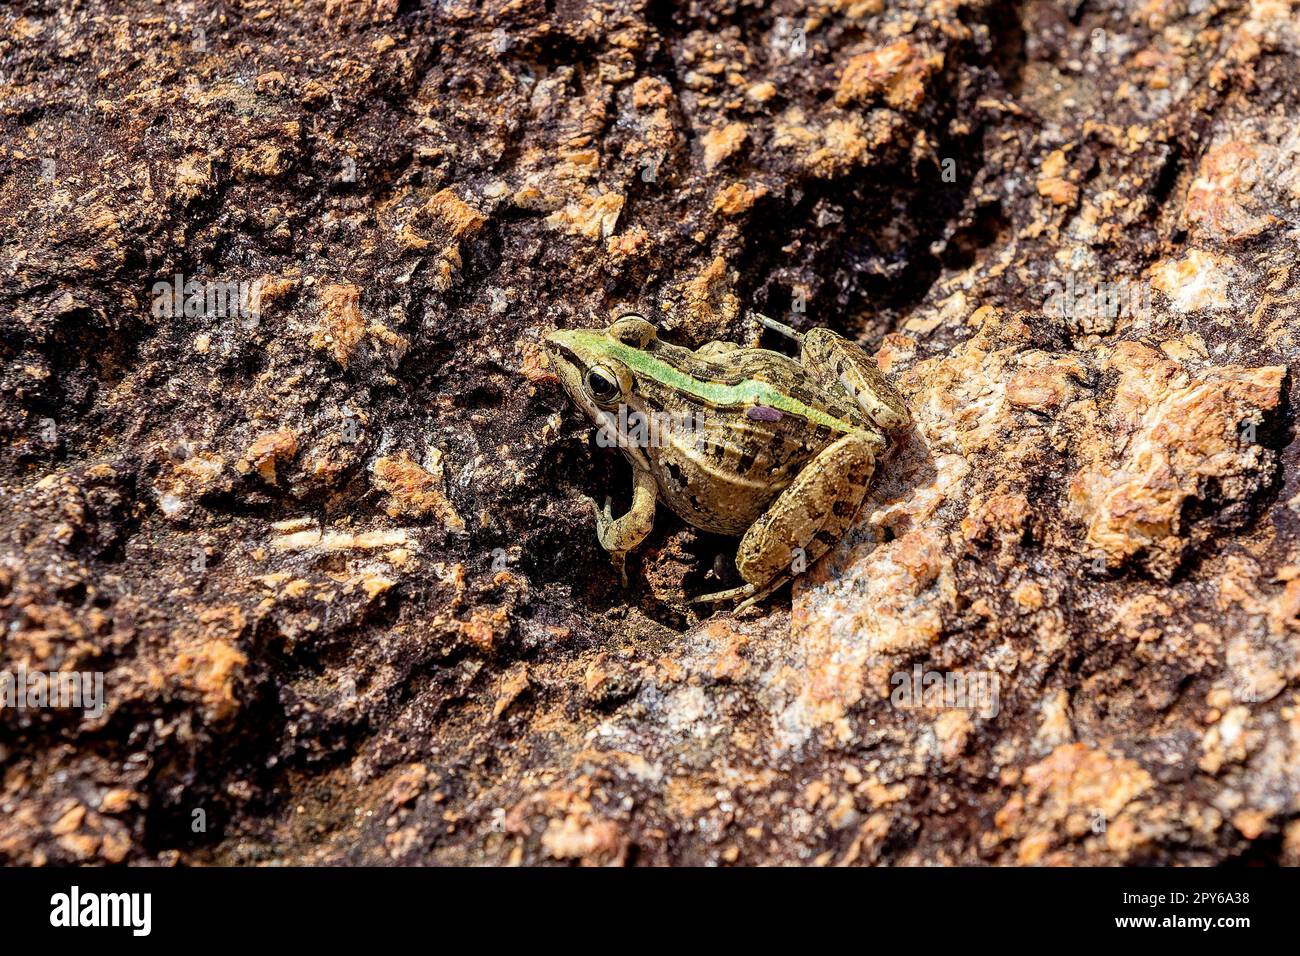 Mascarene grass frog, Ptychadena mascareniensis, Ambalavao, Andringitra National Park, Madagascar wildlife Stock Photo